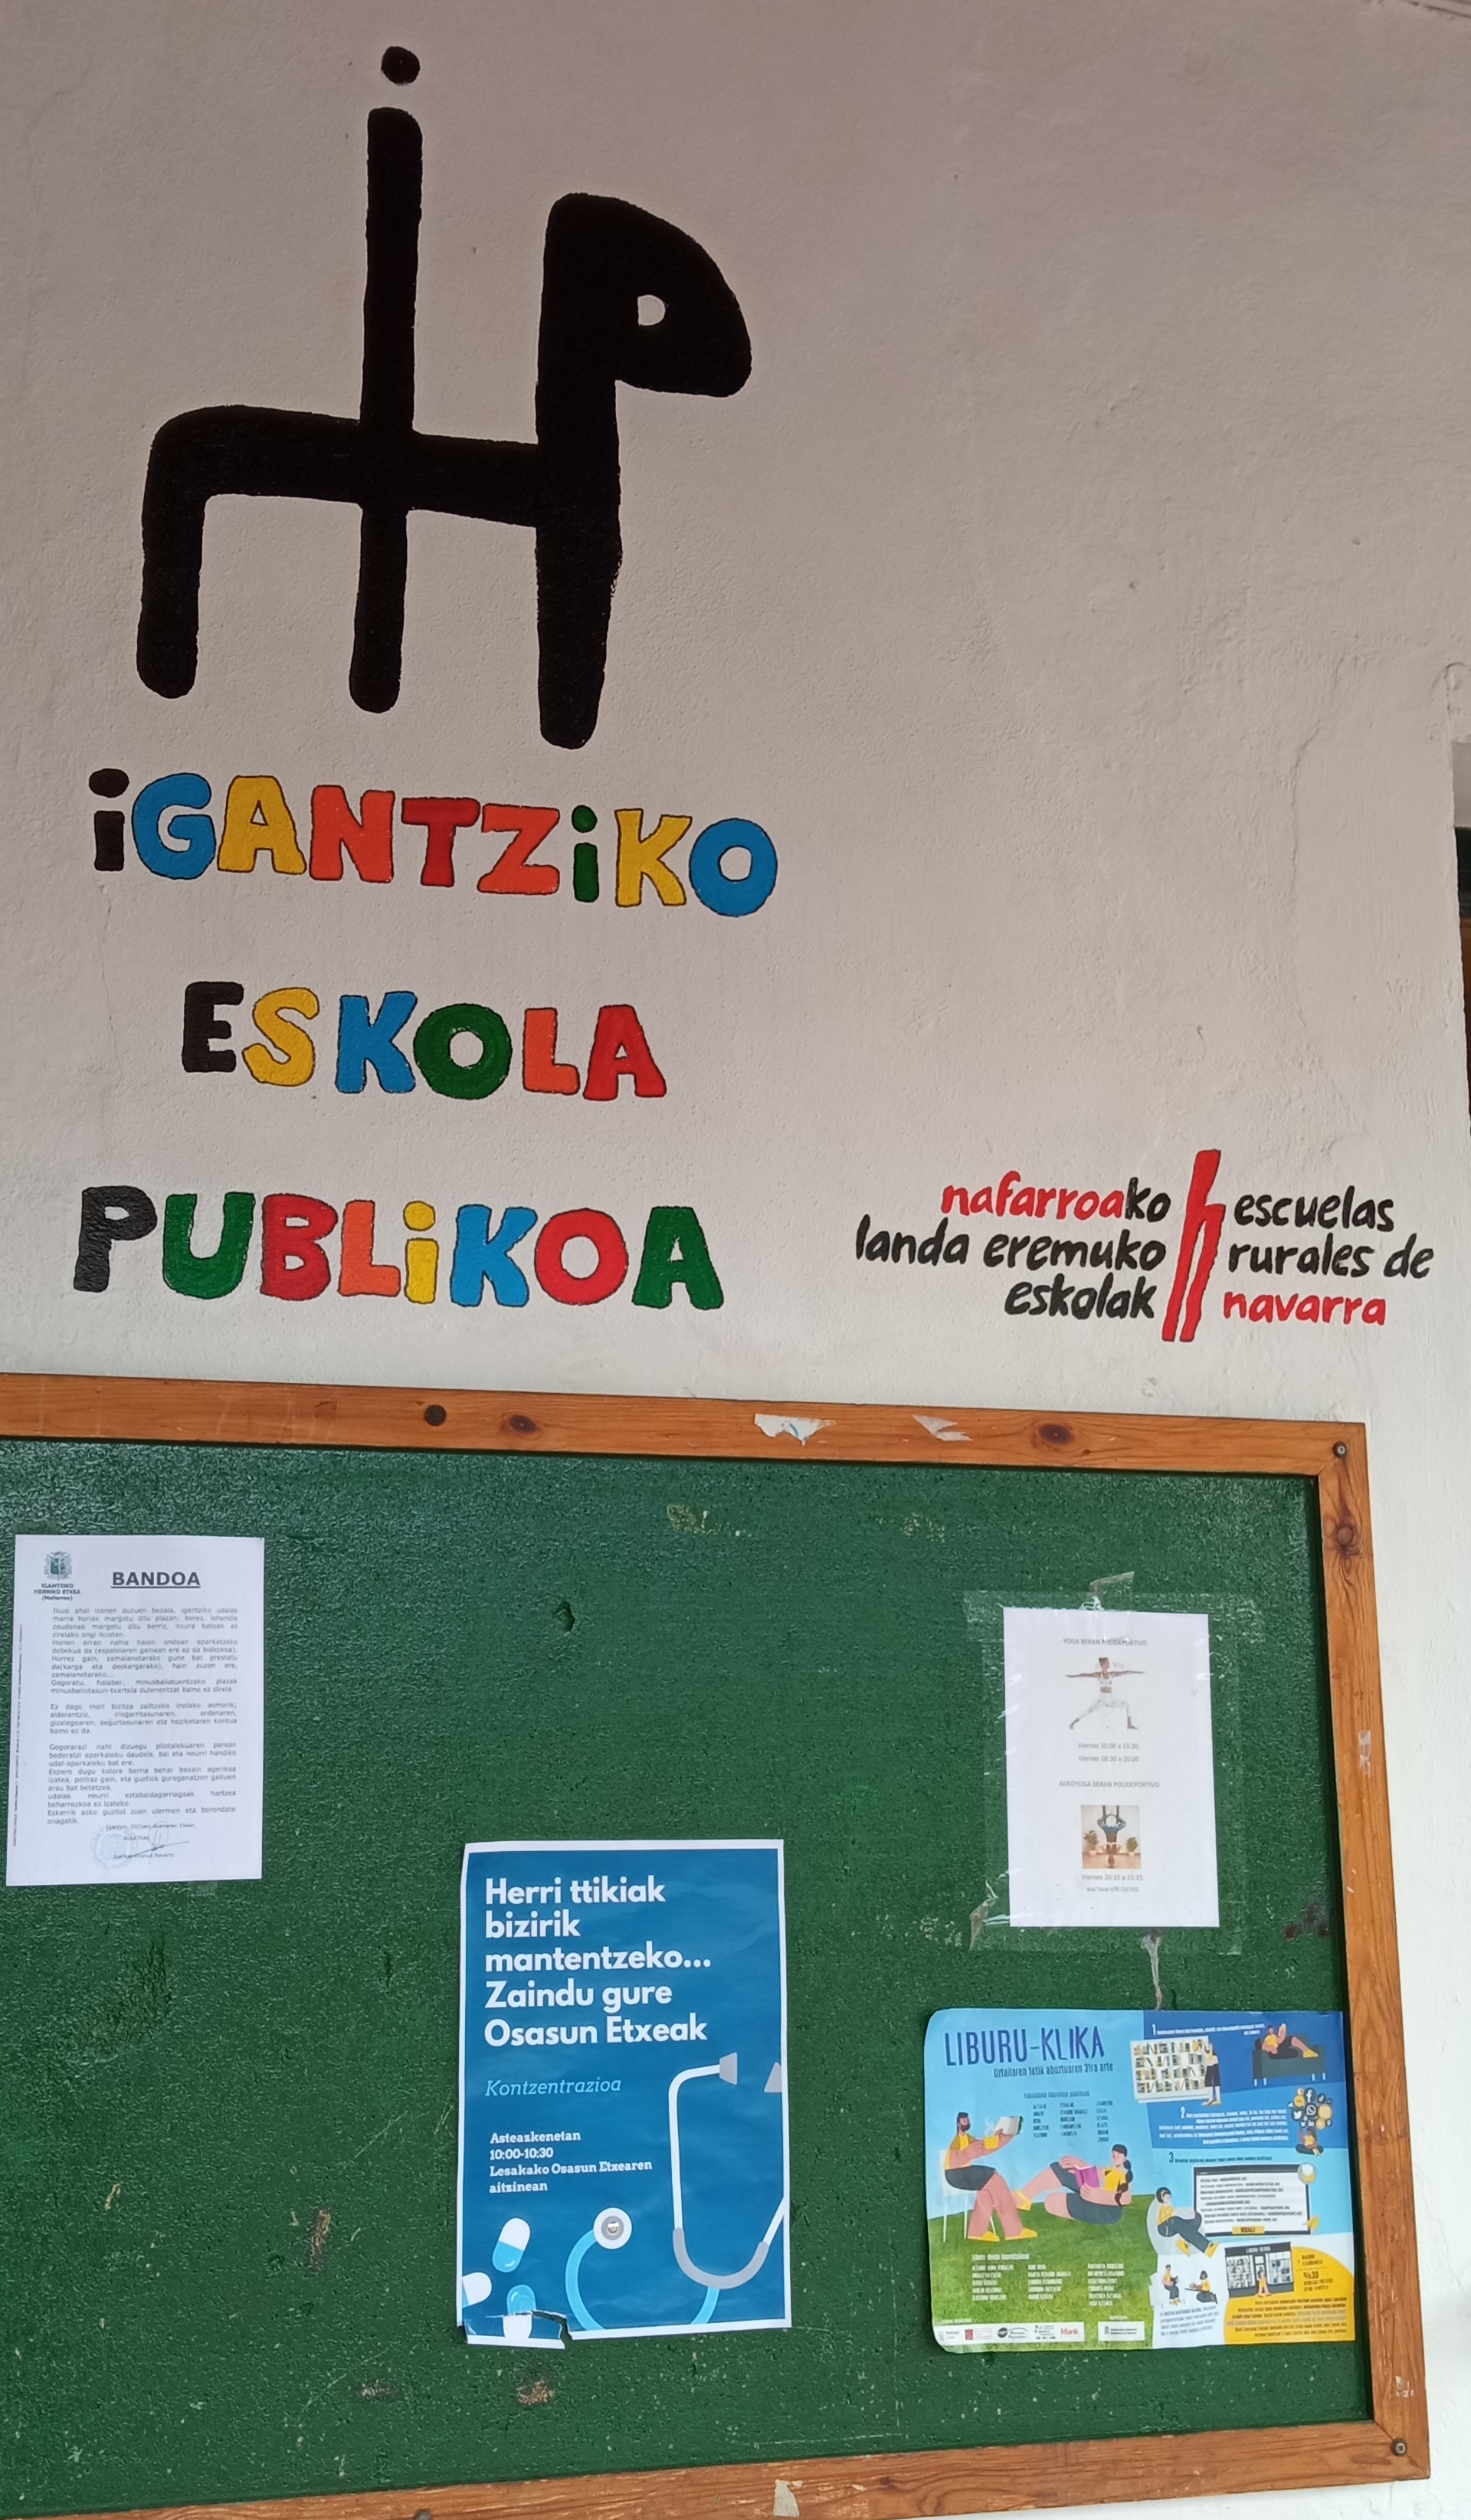 La comunidad escolar del colegio de Igantzi estrena logotipo